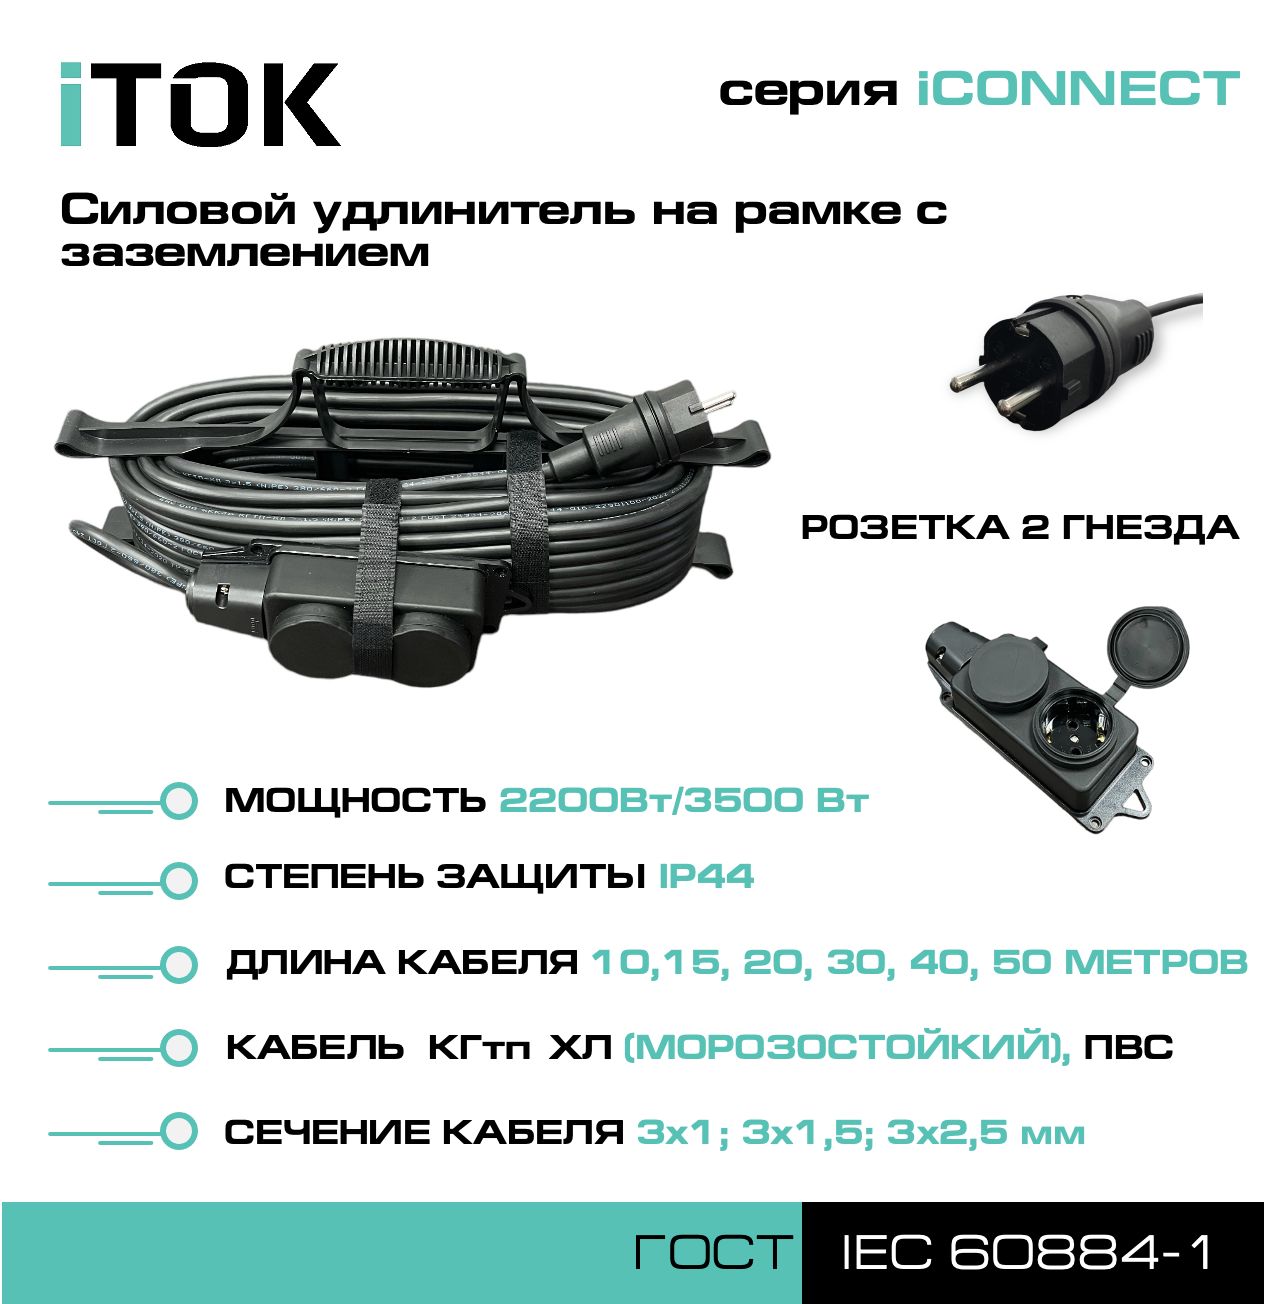 Удлинитель на рамке с заземлением серии iTOK iCONNECT КГтп-ХЛ 3х2,5 мм 2 гнезда IP44 10 м